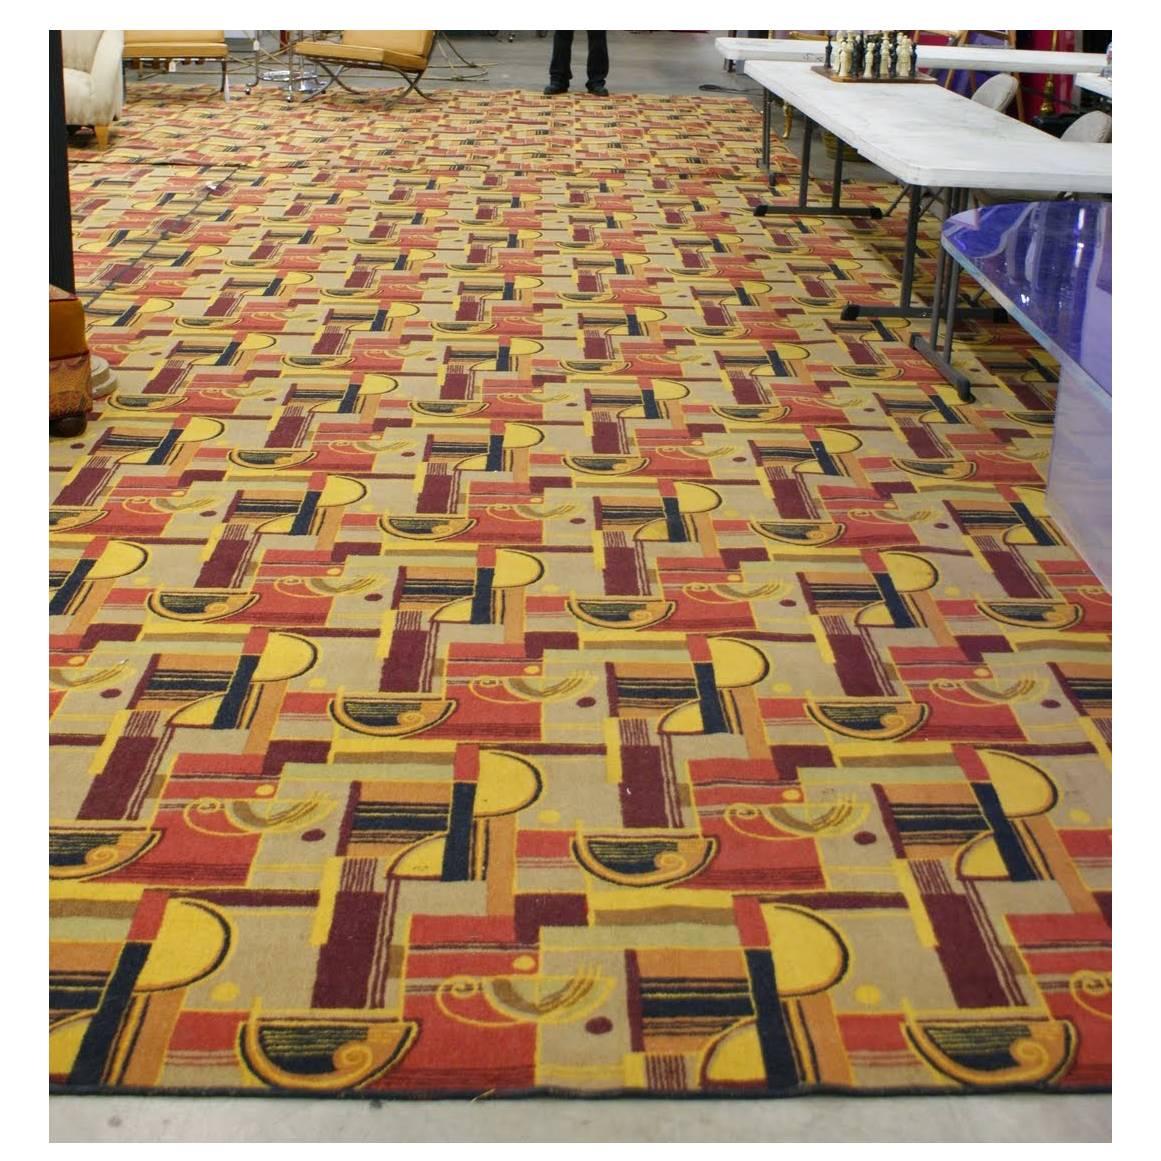 Grand tapis de style Art déco présentant un motif géométrique multicolore avec des tons chauds rouges, bruns, jaunes et beiges, comme ceux d'Edward Fields. Ce tapis est un revêtement de sol prélevé sur le RMS Queen Mary dans les années 1970 et